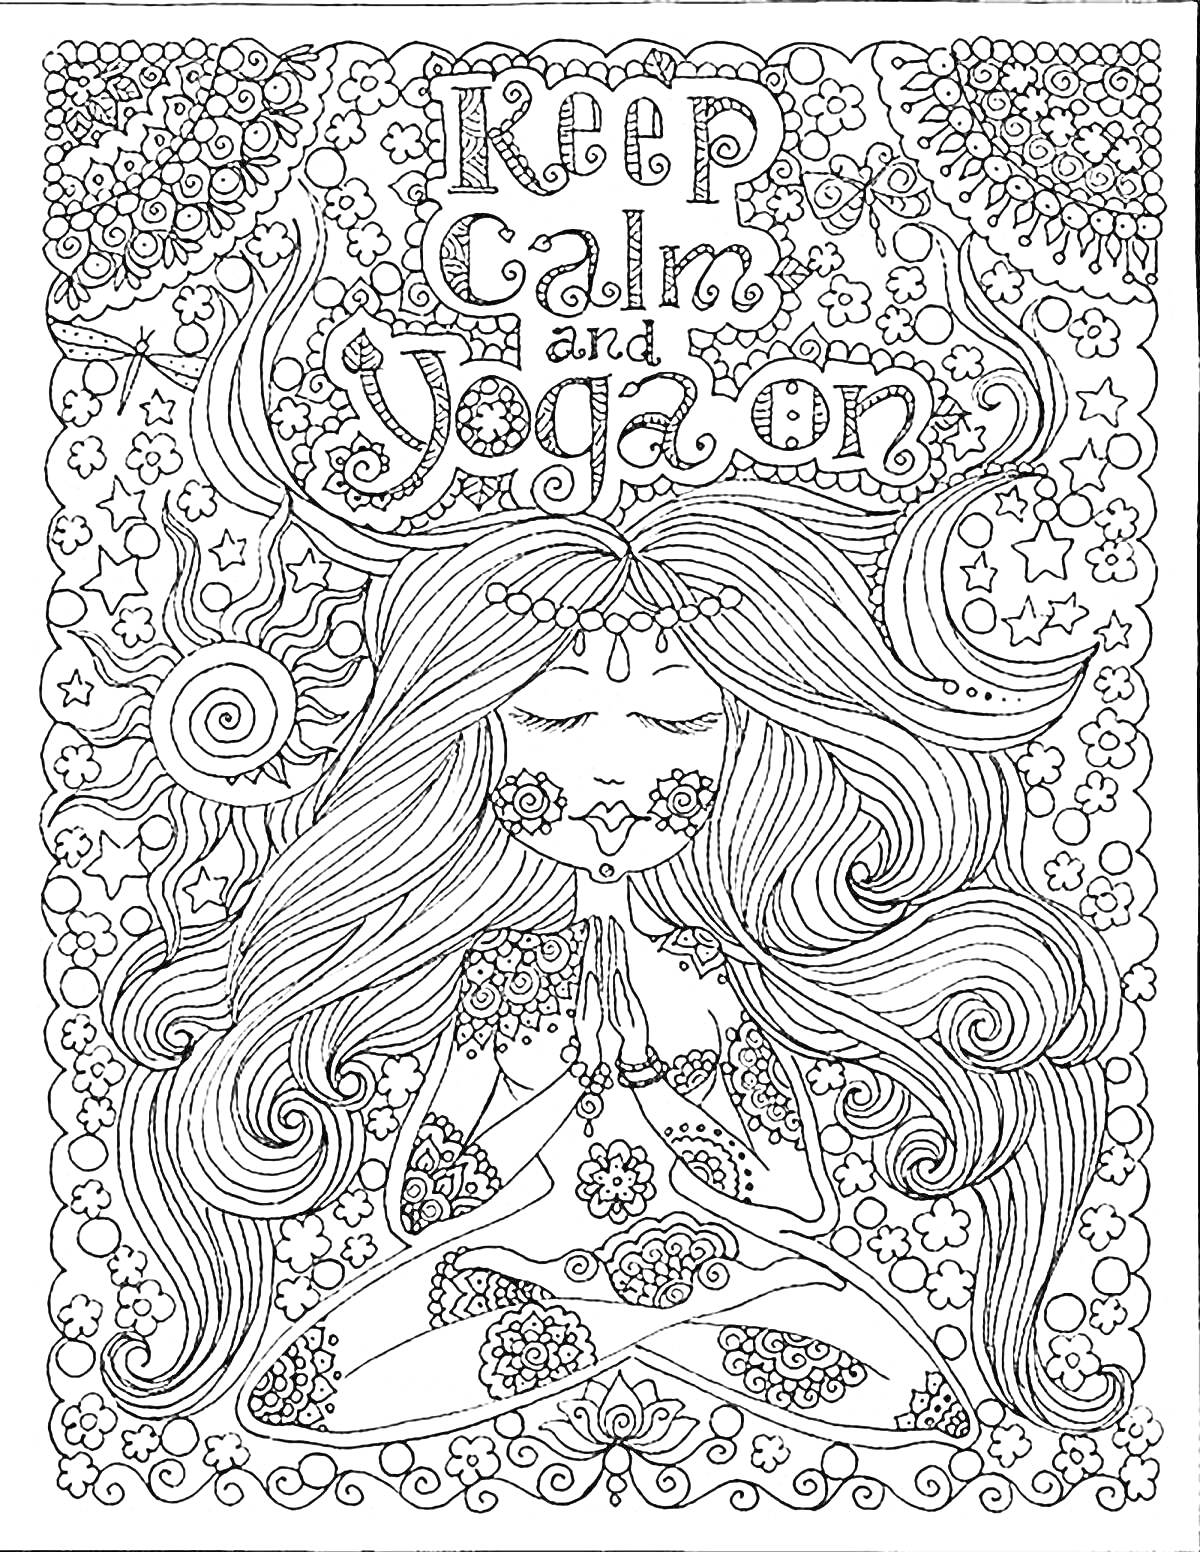 Раскраска Дева в позе йоги с длинными распущенными волосами, окружена цветами и узорами, надпись 